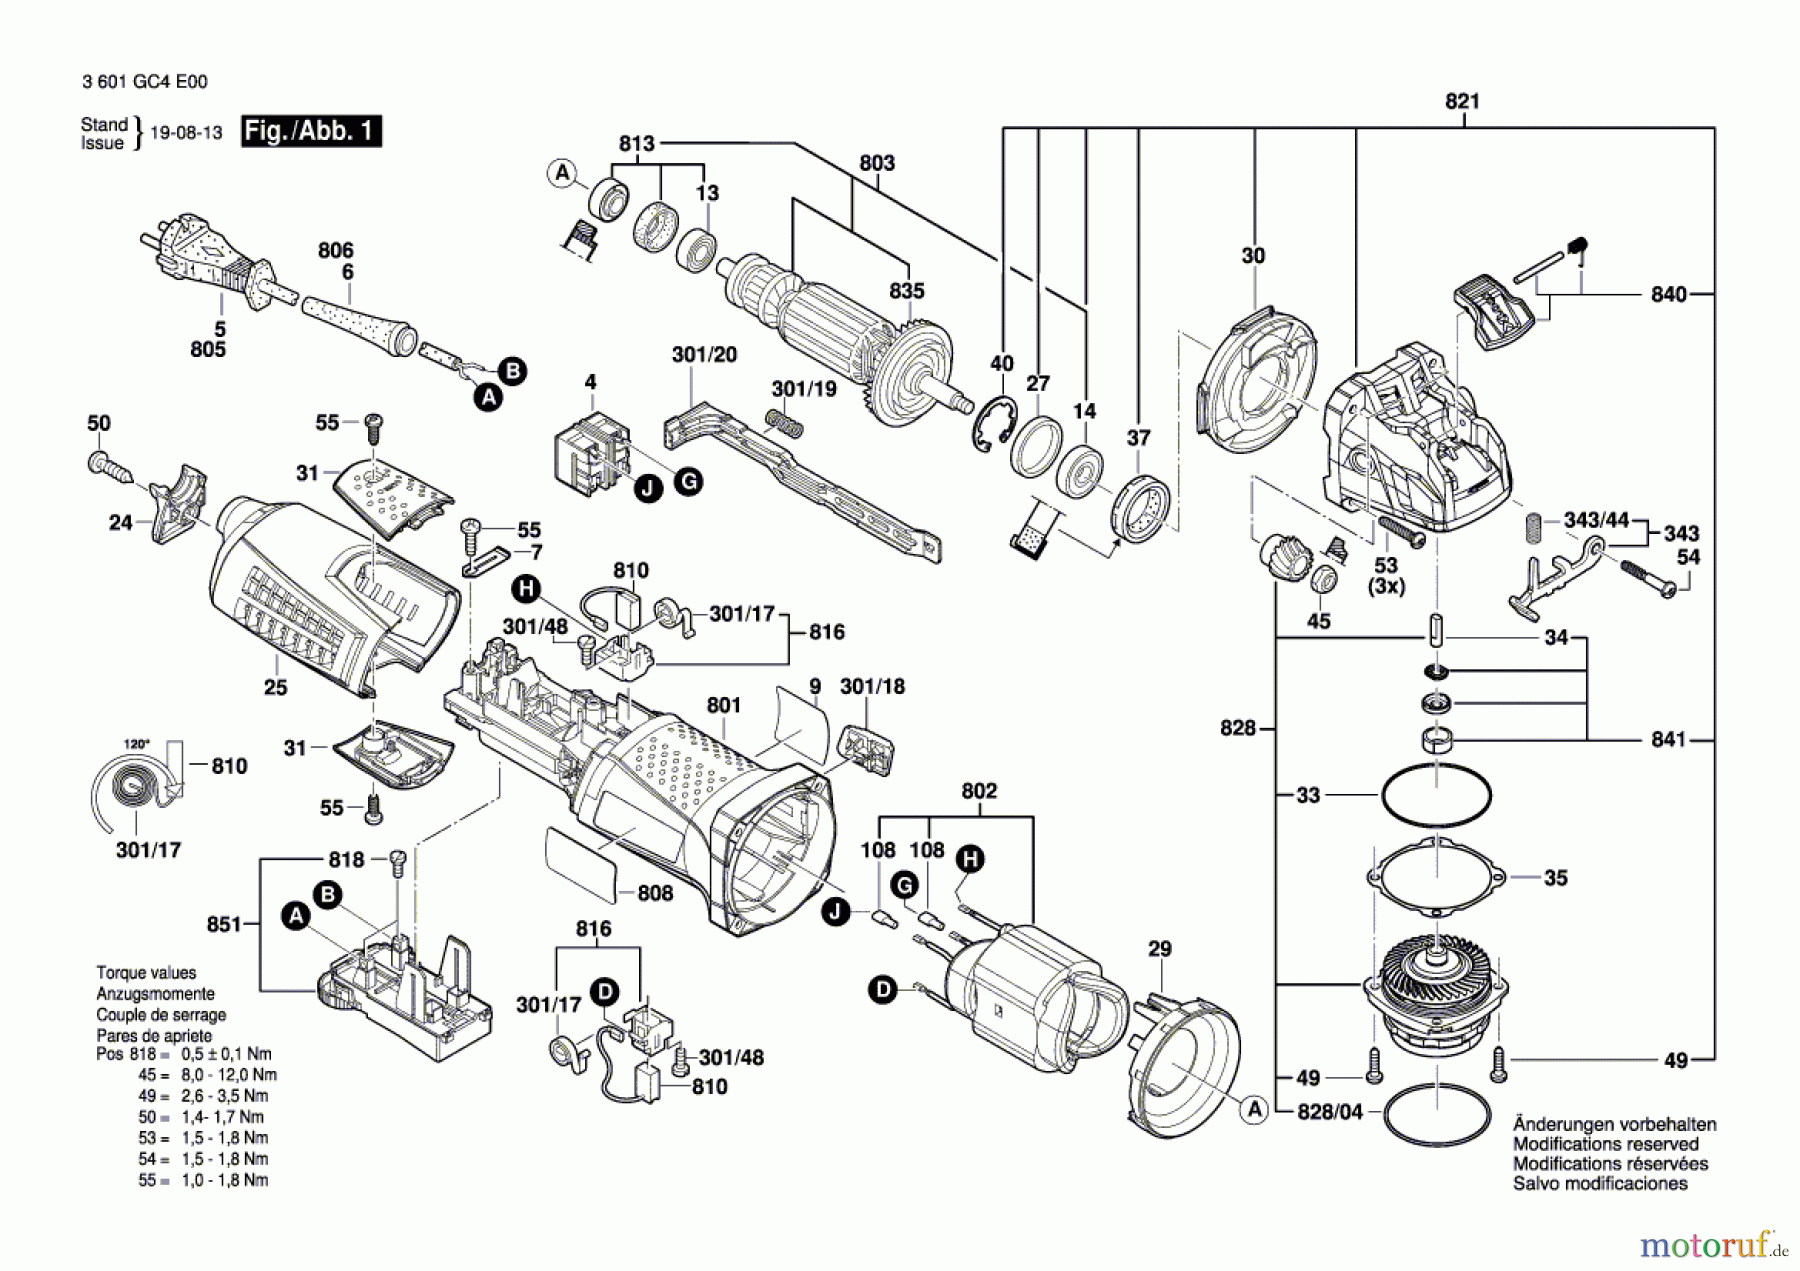  Bosch Werkzeug Winkelschleifer --- Seite 1